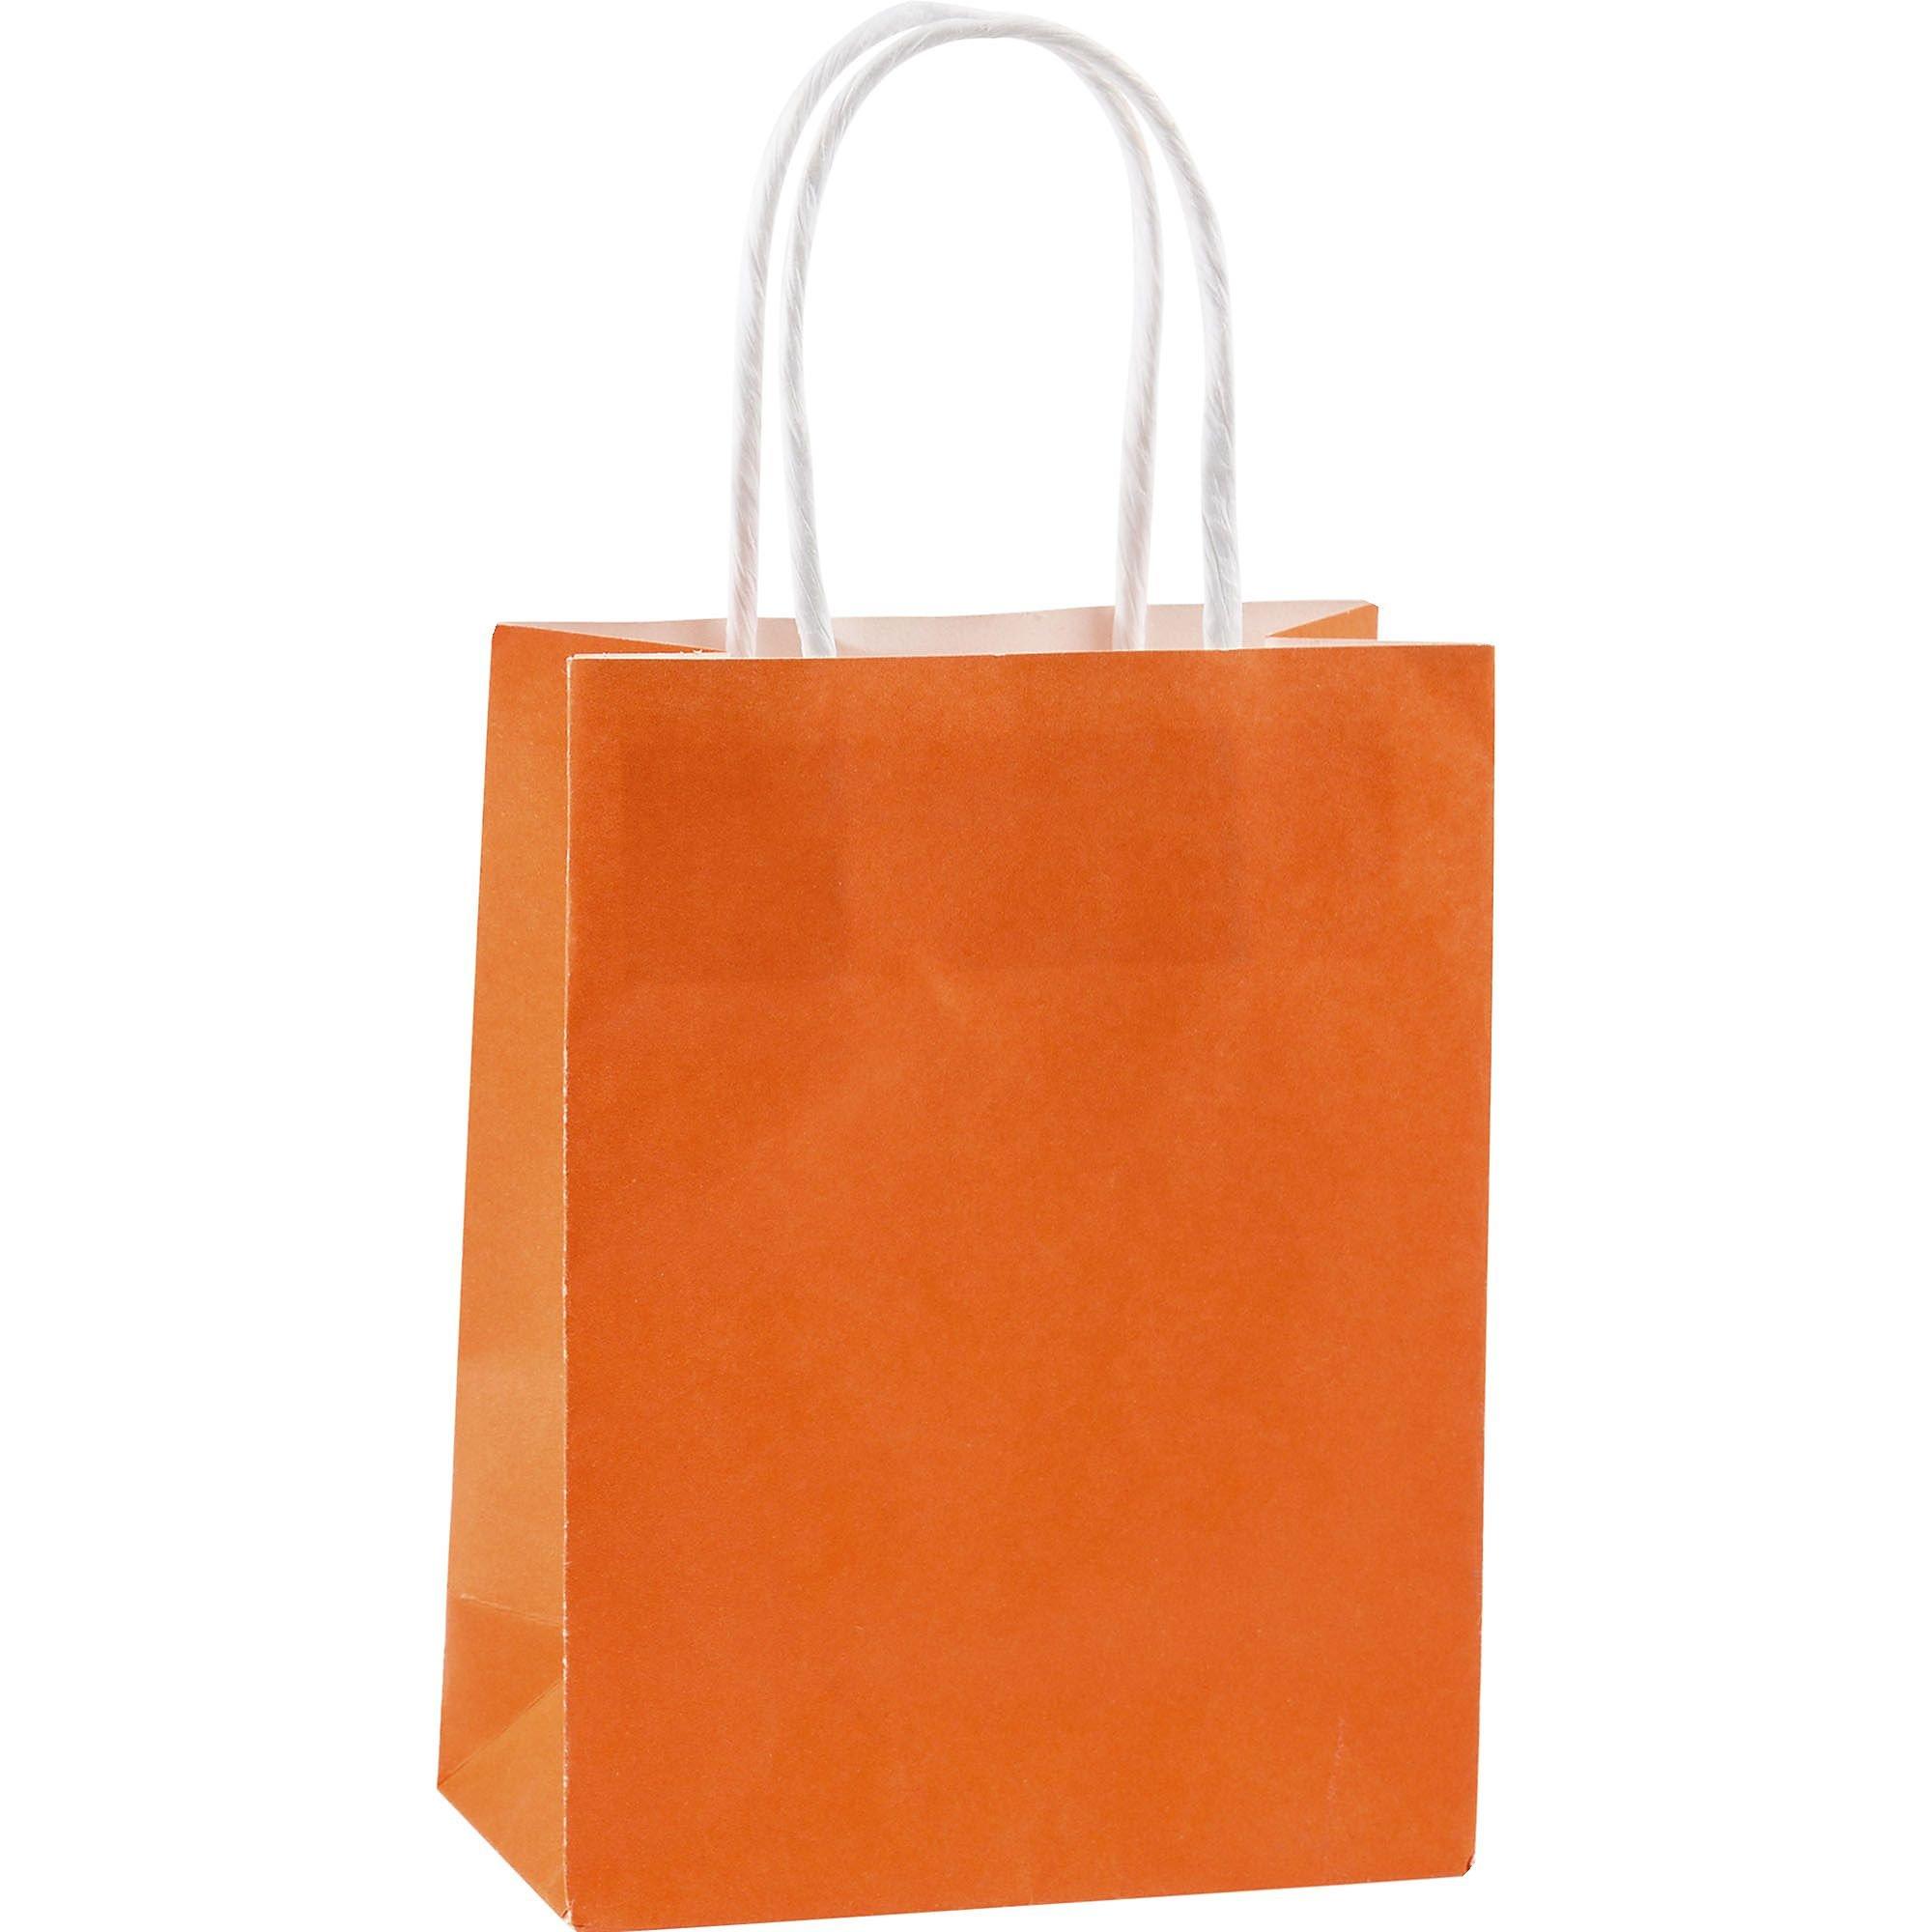 Kraft Handle Bags, Orange - 10 pack